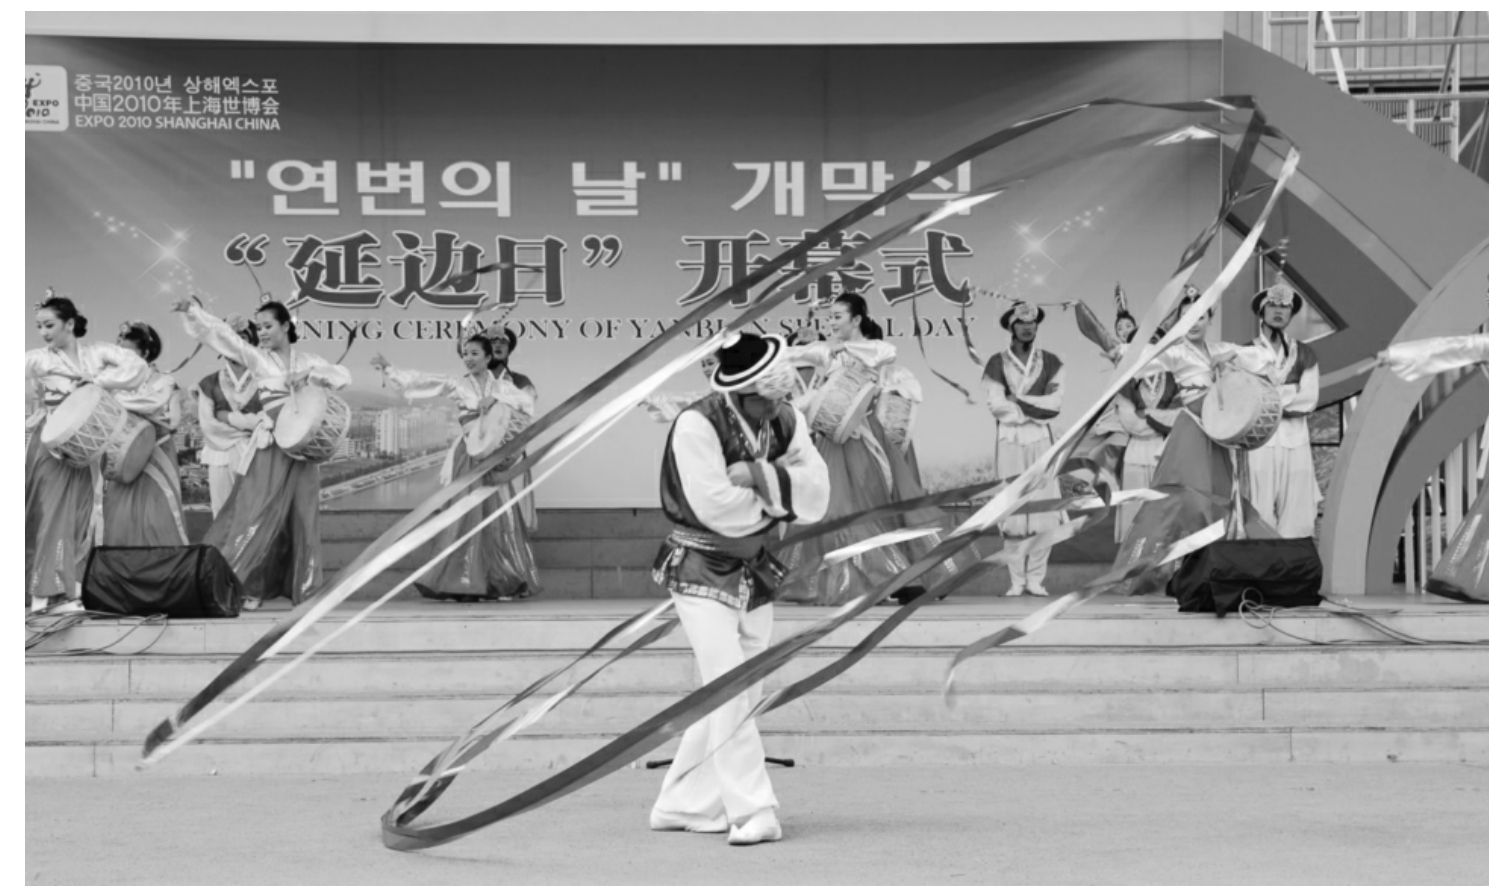 【周末剧场】素有“朝鲜族舞坛上的一颗明珠”之美称的杖鼓舞，即将登上周末剧场的舞台~ - 文化馆新闻 - 新闻资讯 - 深圳数字文化馆